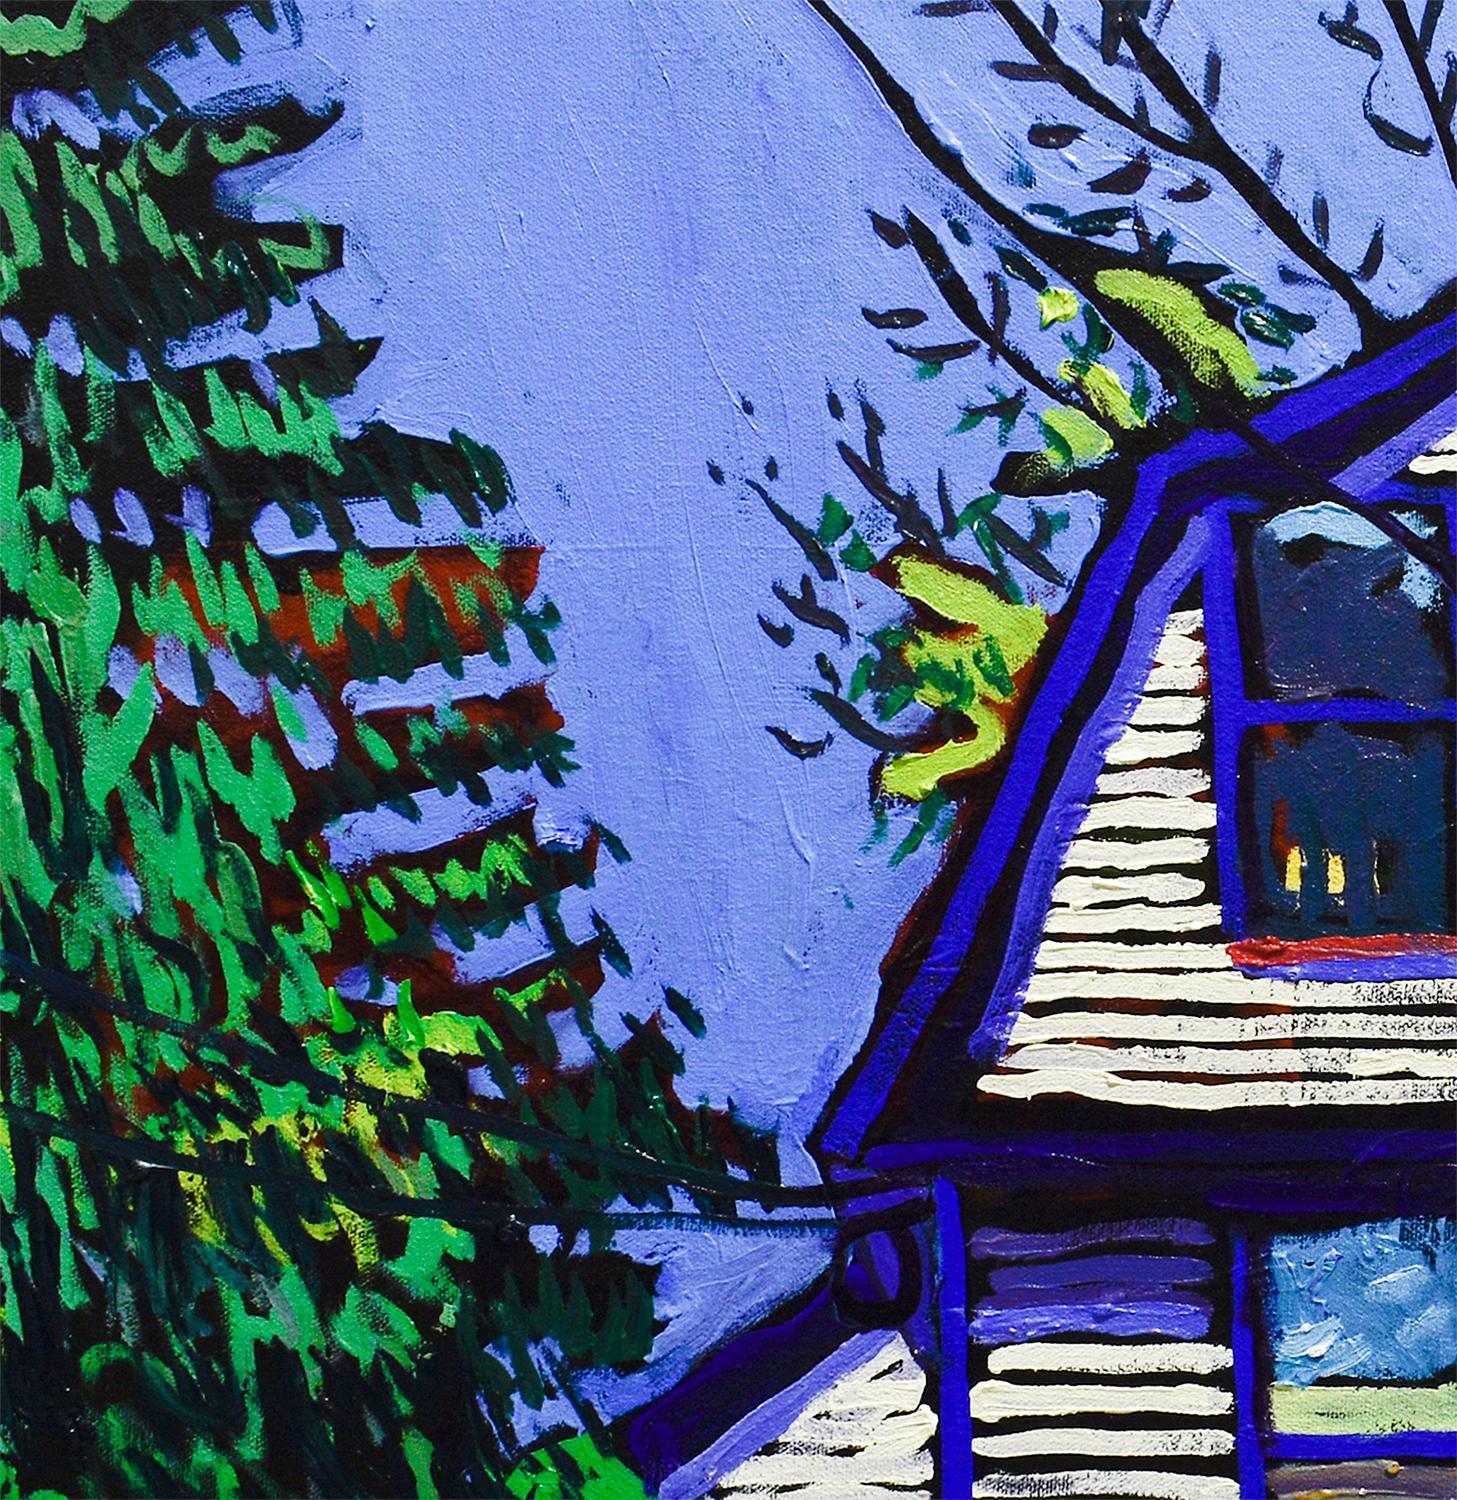 112 2nd St (huile contemporaine aux couleurs vives, bordure blanche et bleue) - Violet Still-Life Painting par Dan Rupe